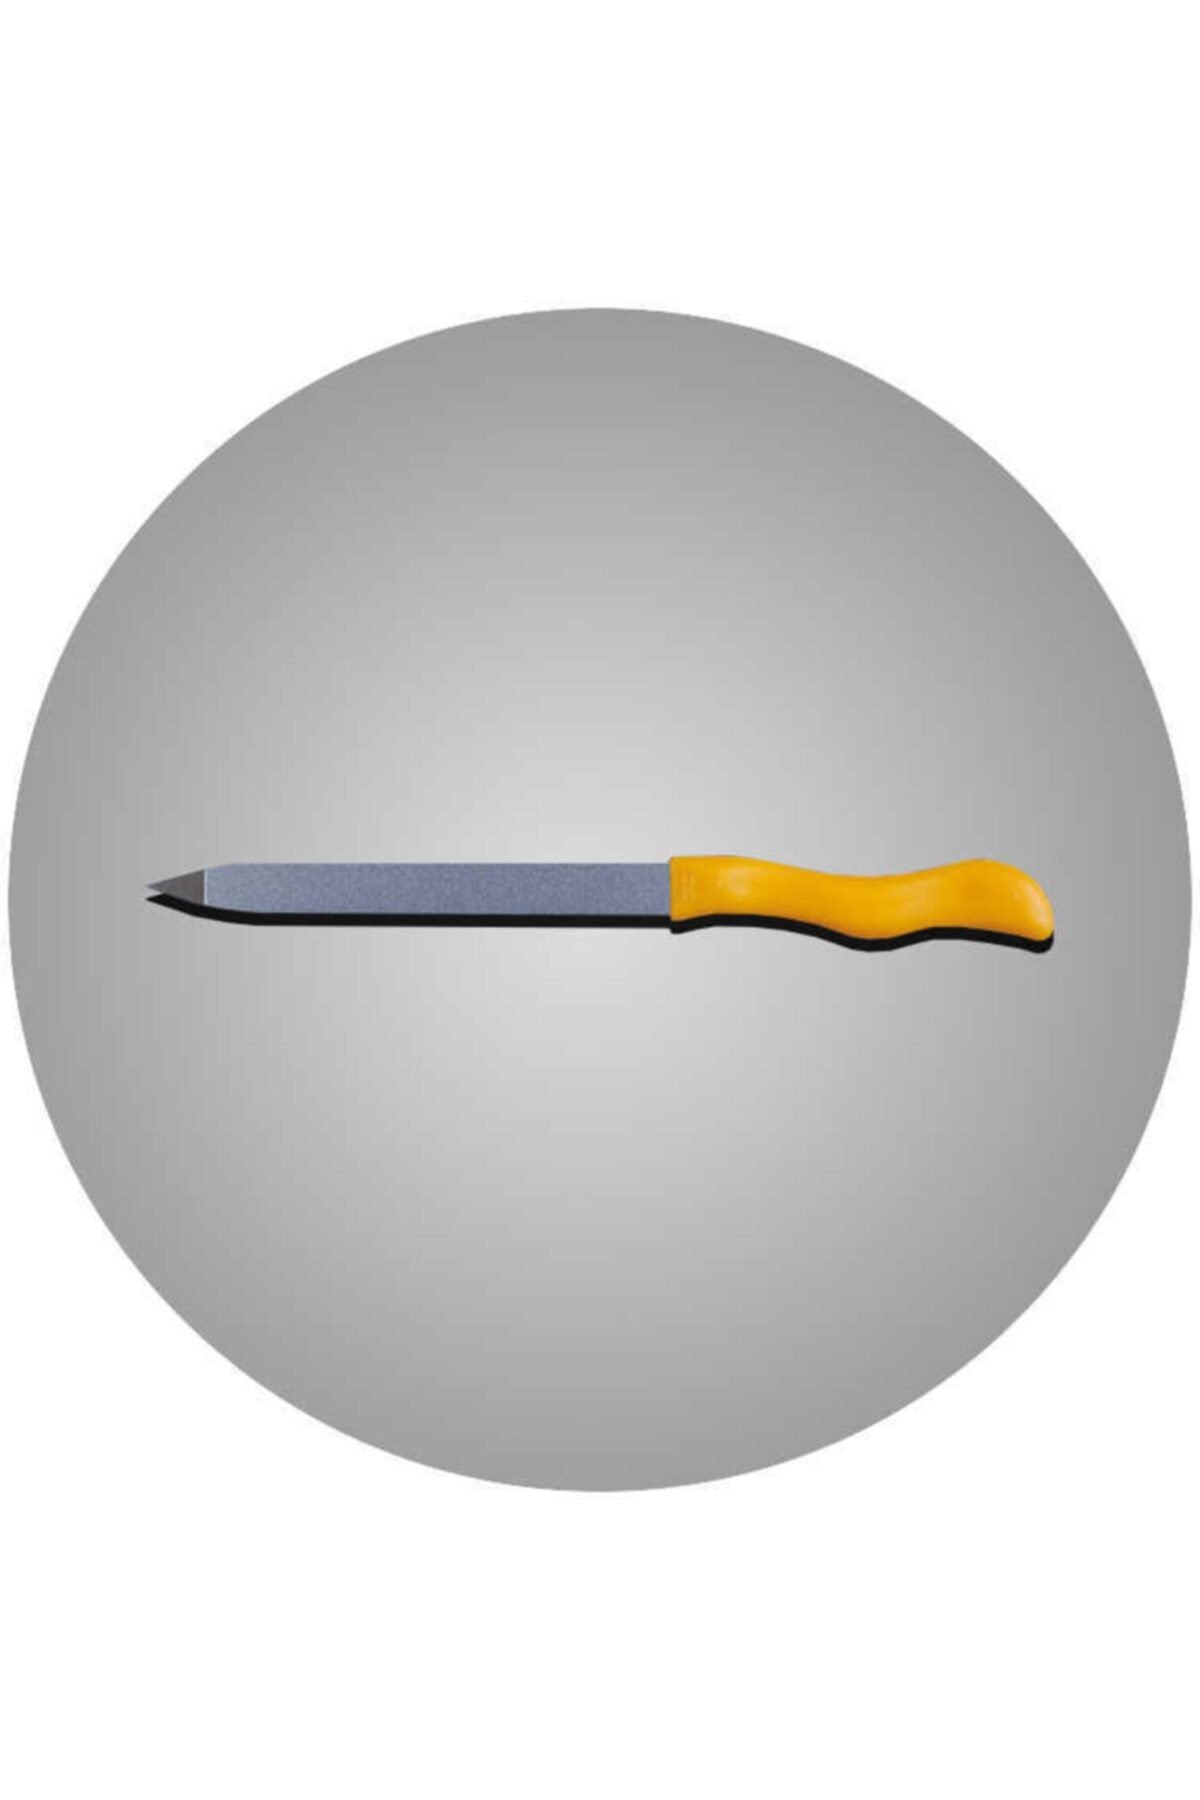 Solingen Gösol 15cm Safir Püskürtme Törpü (Sarı) 720015015